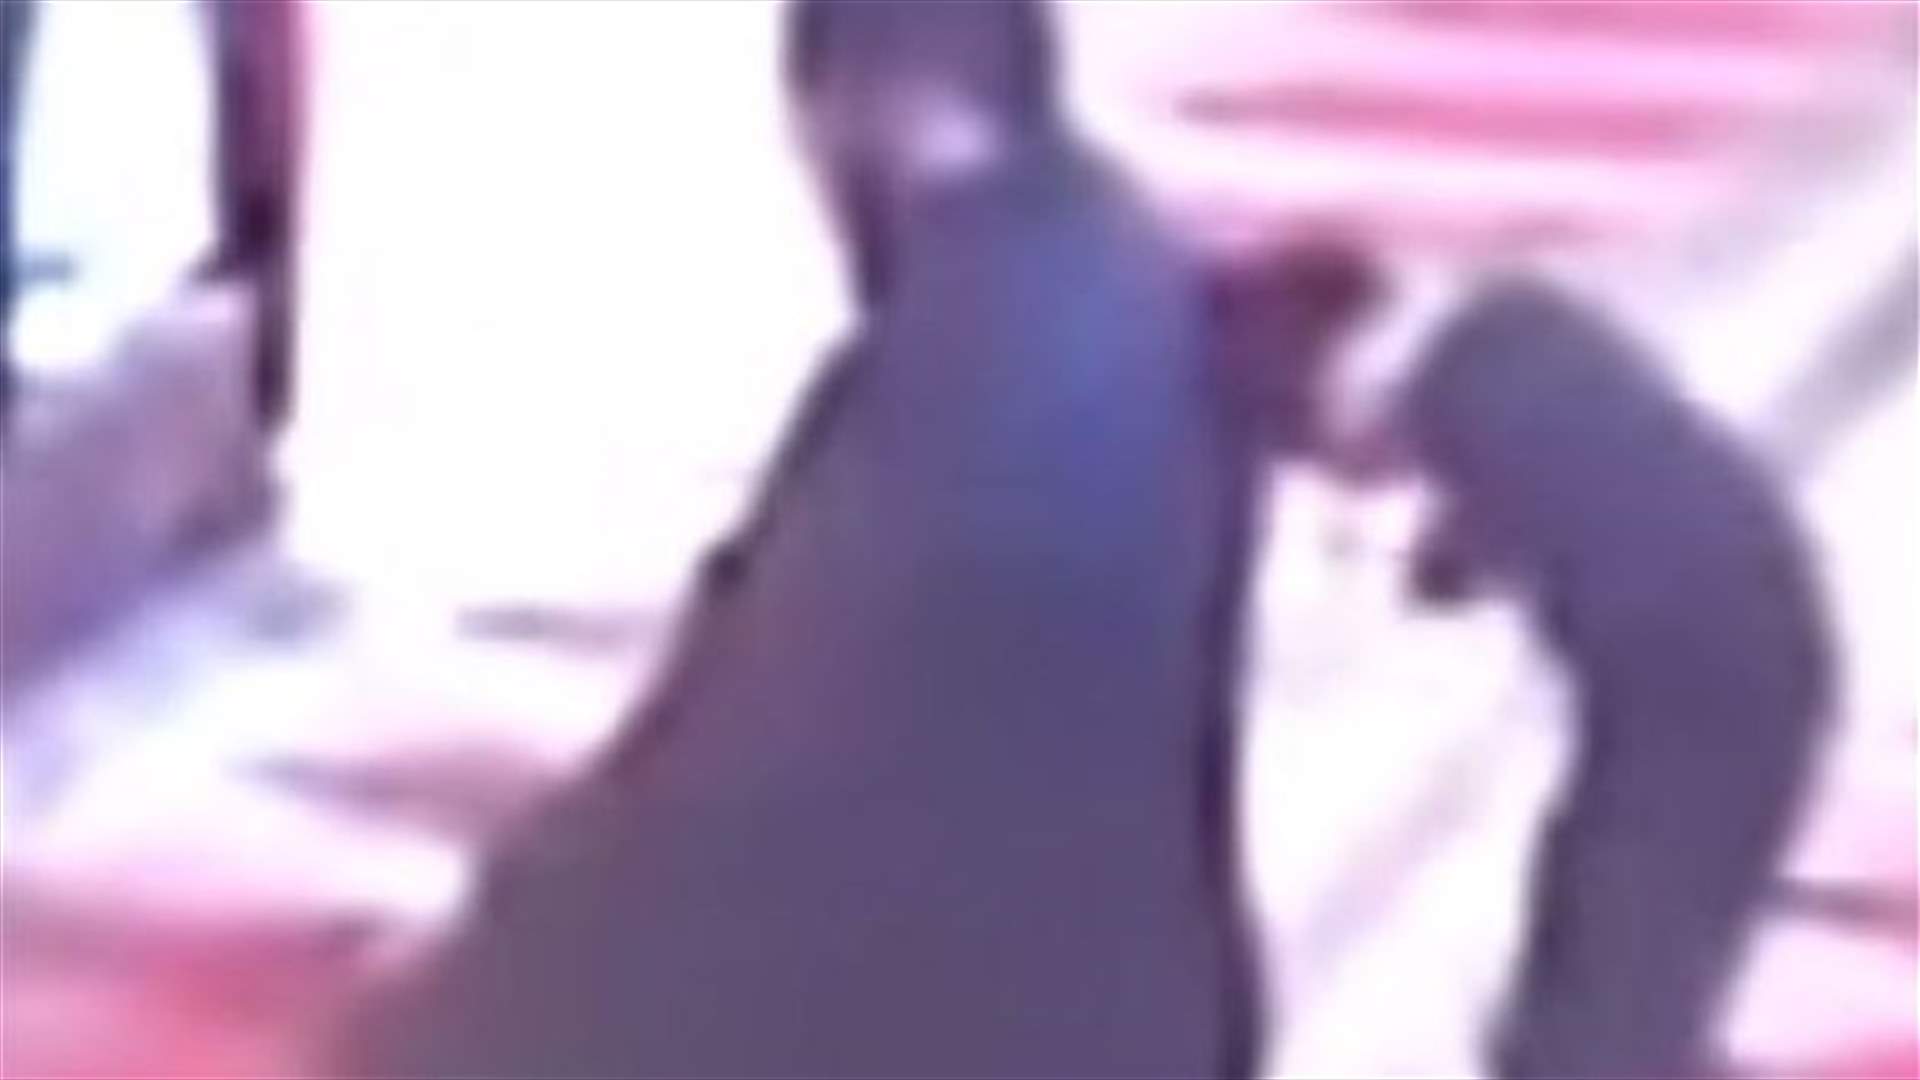 بالفيديو: حاول إزعاج والده في المسجد فكانت النتيجة...